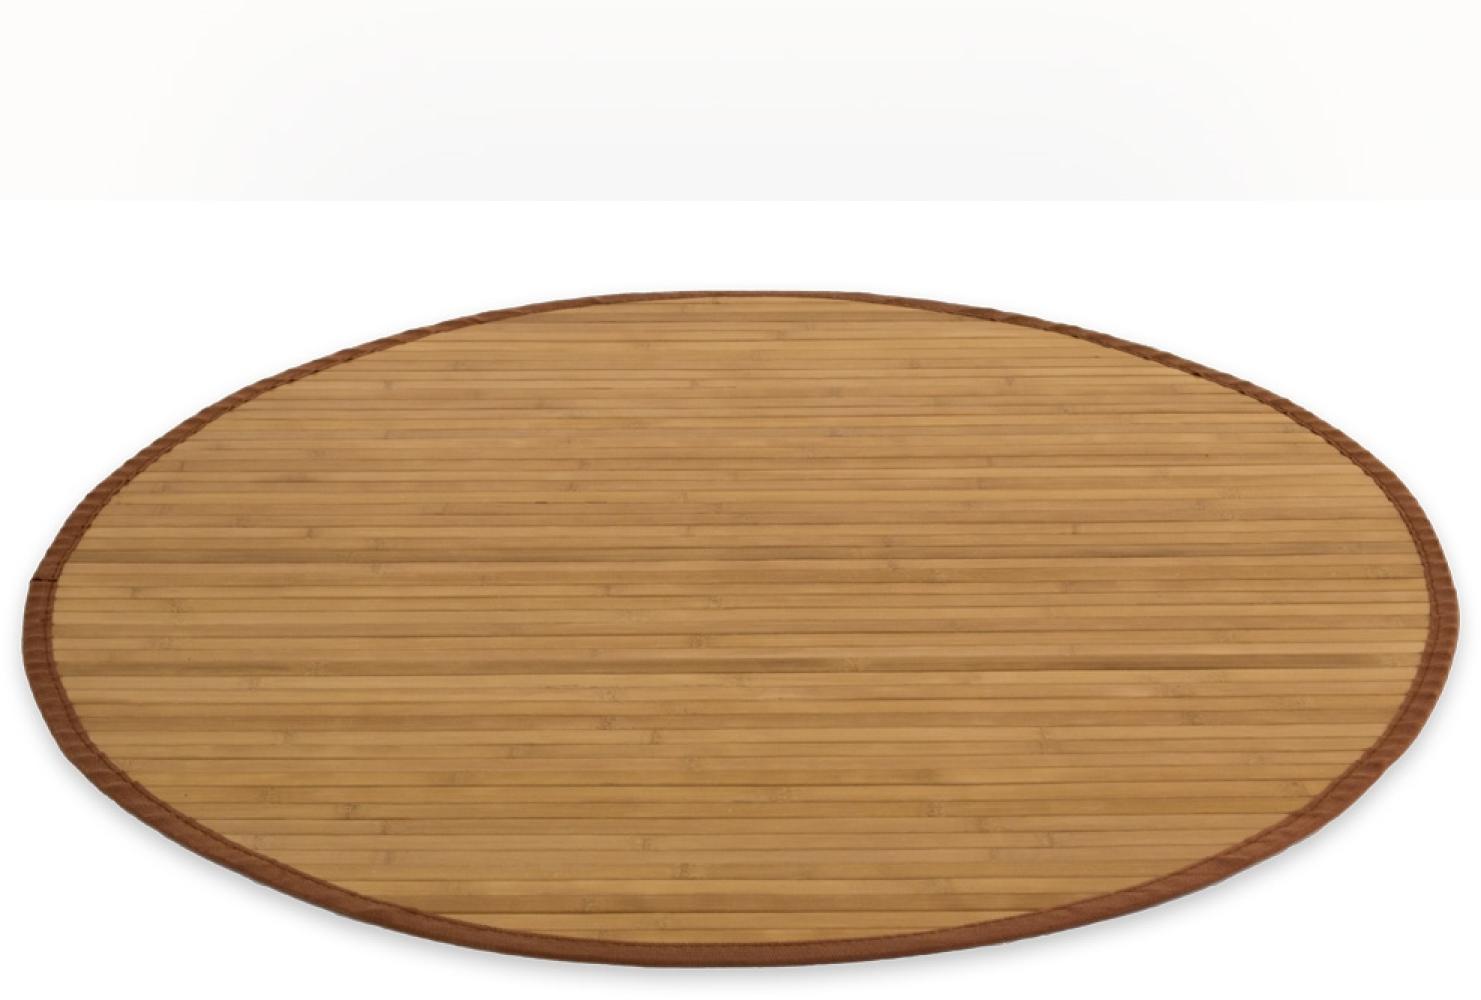 Homestyle4u Teppich, rund, Bambus braun, Ø 200 cm Bild 1